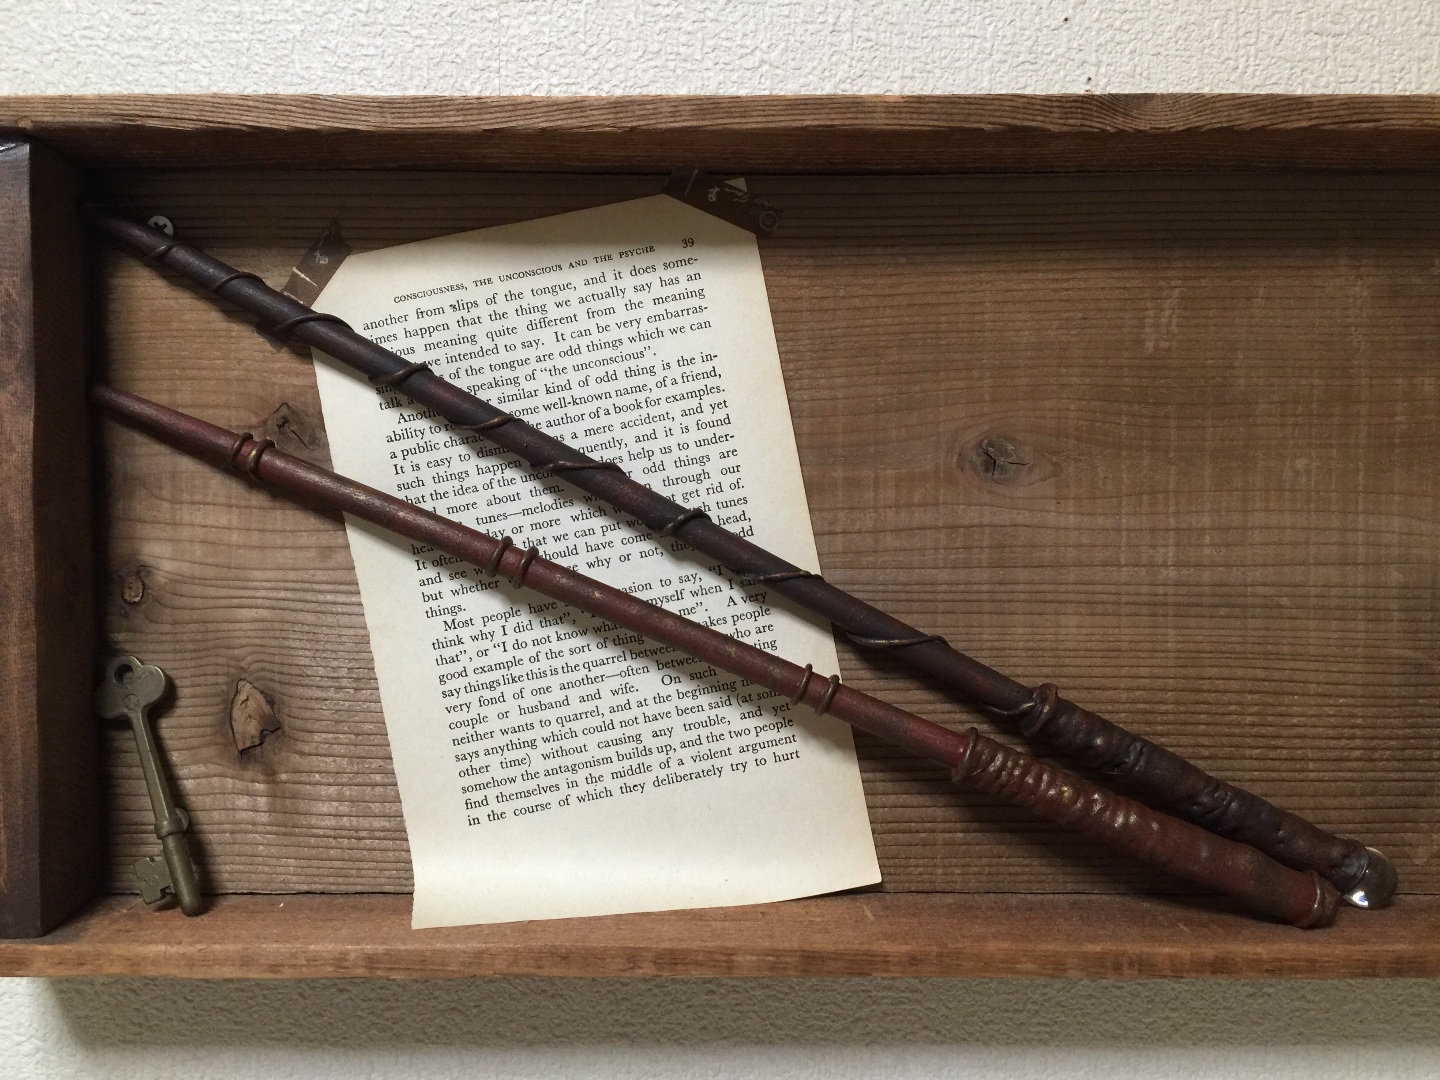 【マレフィセント】オシャレで可愛い魔法のステッキ・杖の作り方まとめ【ハリー・ポッターシリーズ】